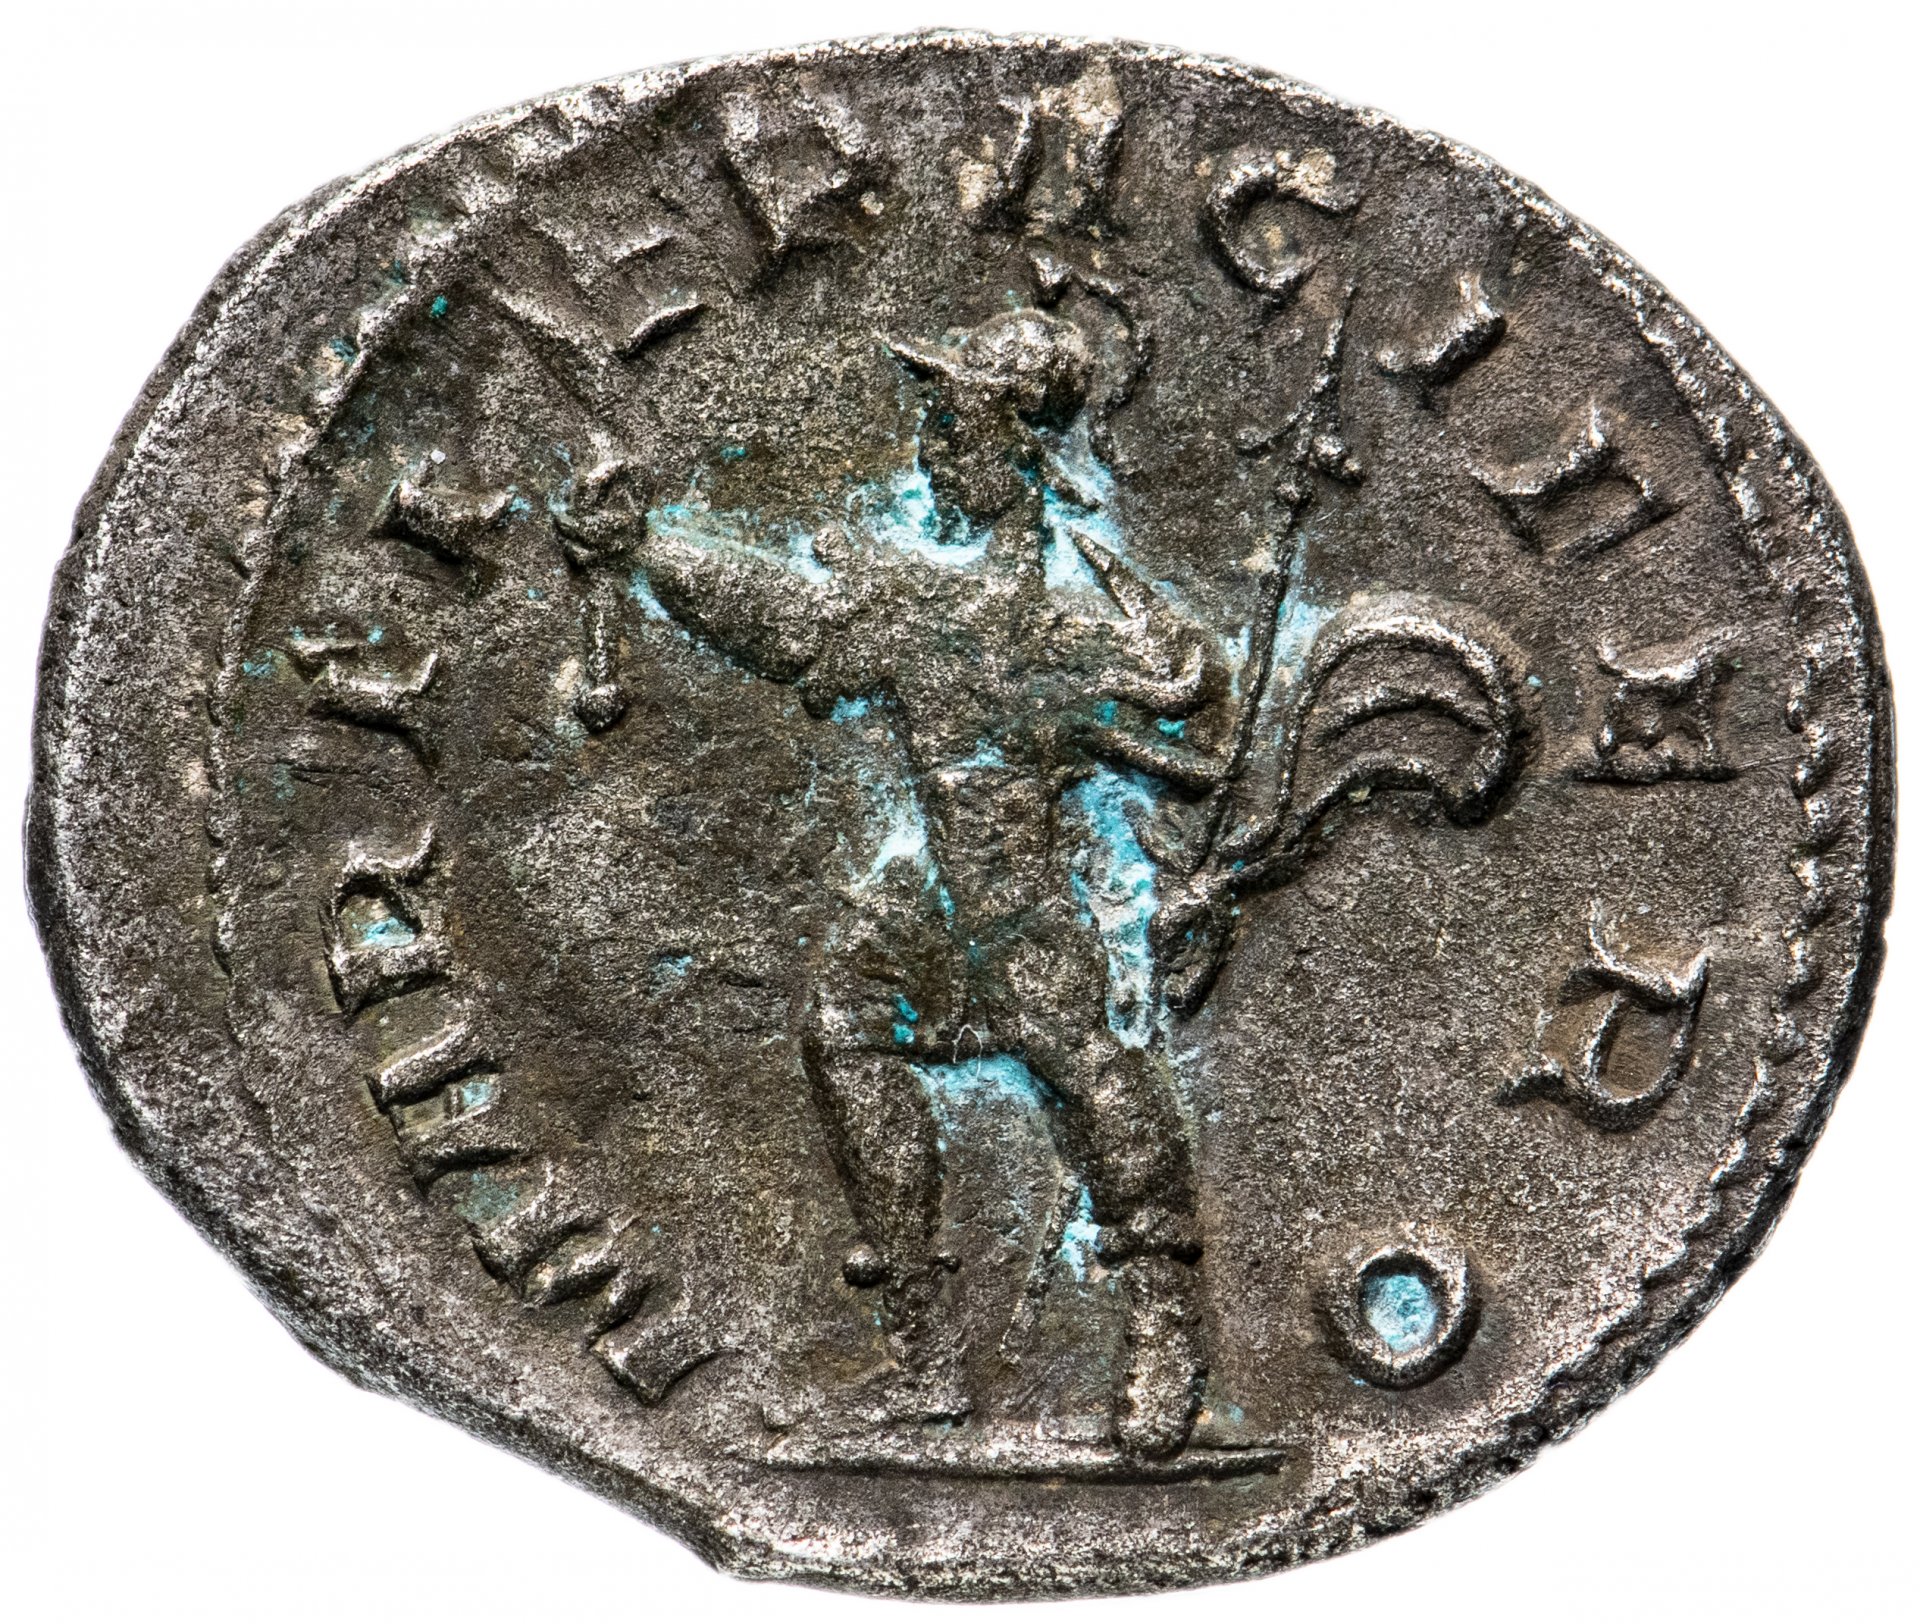 450 Римская монета. Римские монеты в Крыму. Римская Империя монета три арки. Римская монета 3